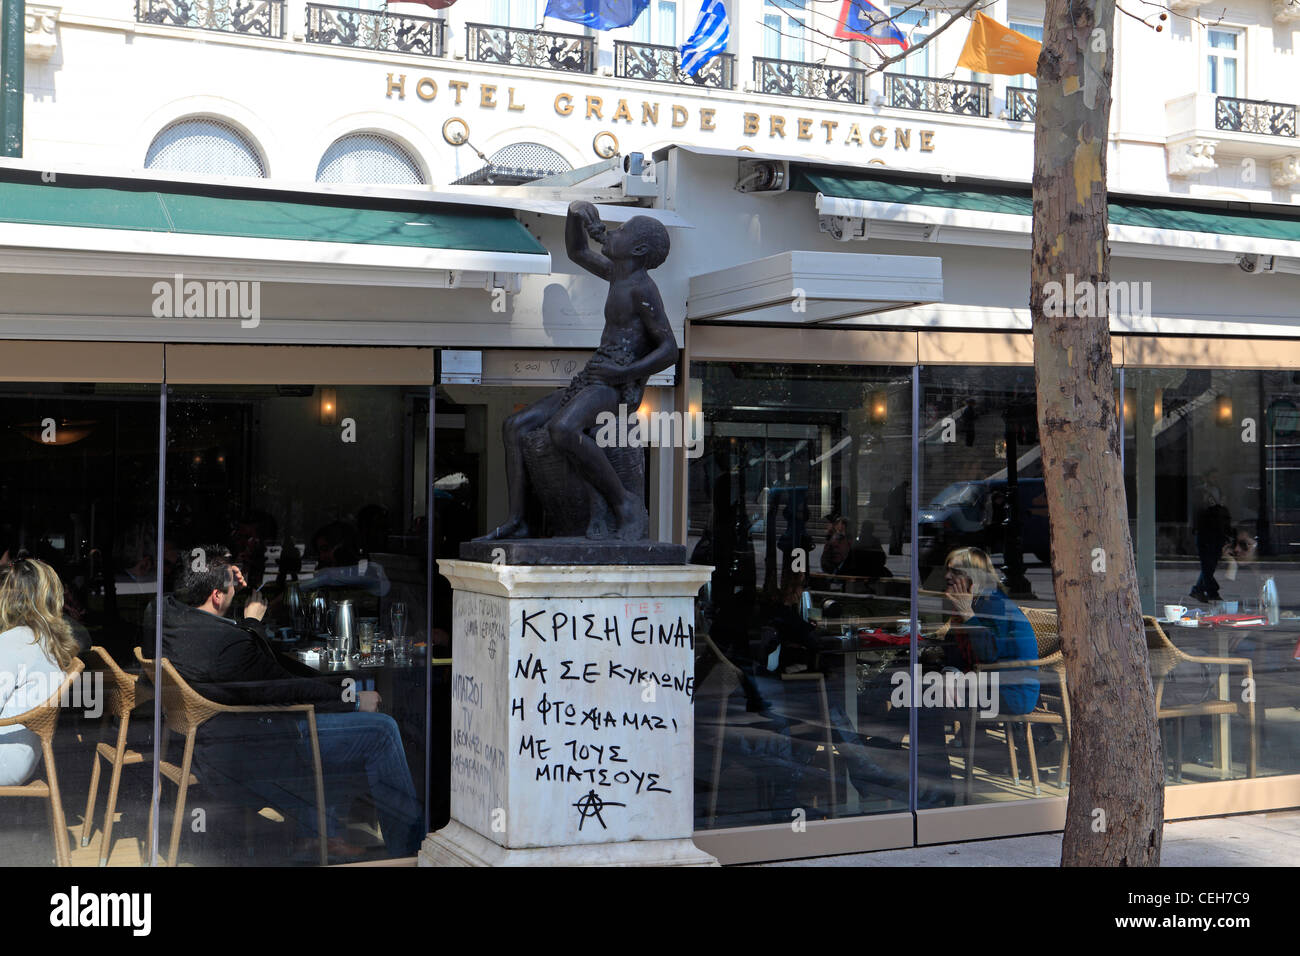 Grecia Atene piazza Syntagma graffiti su una statua dal grande bretagne hotel Foto Stock